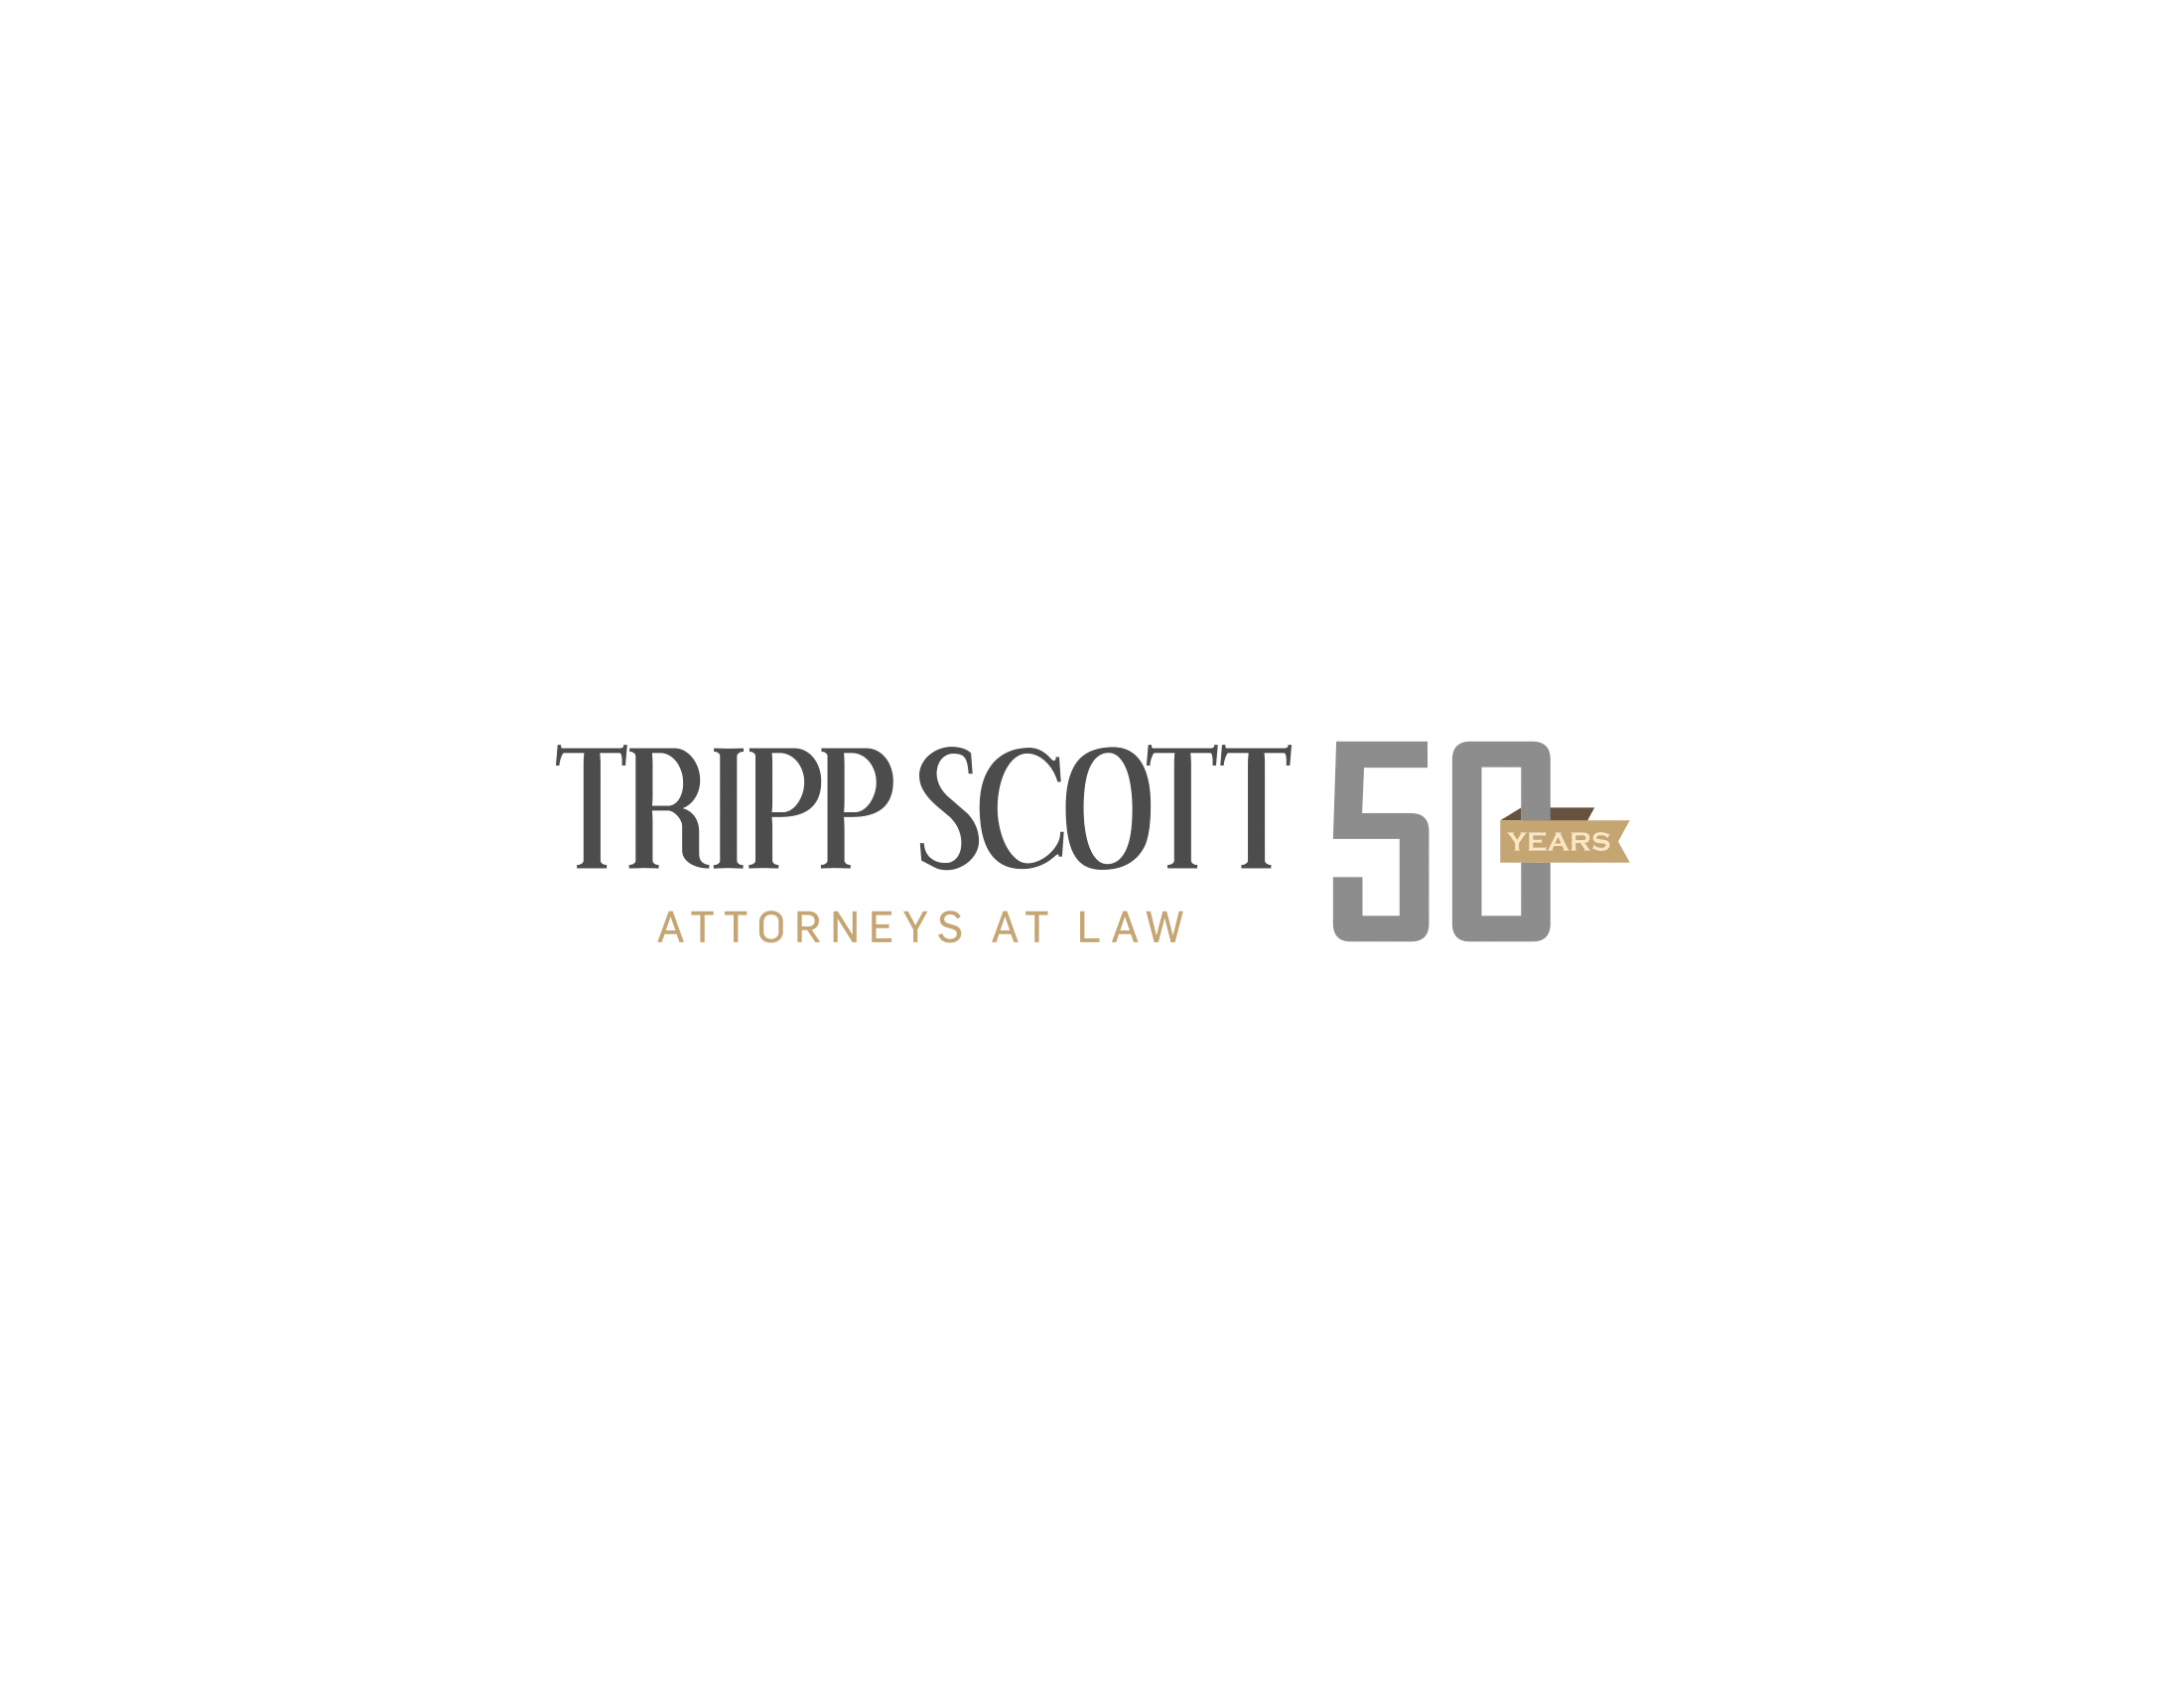 Tripp Scott